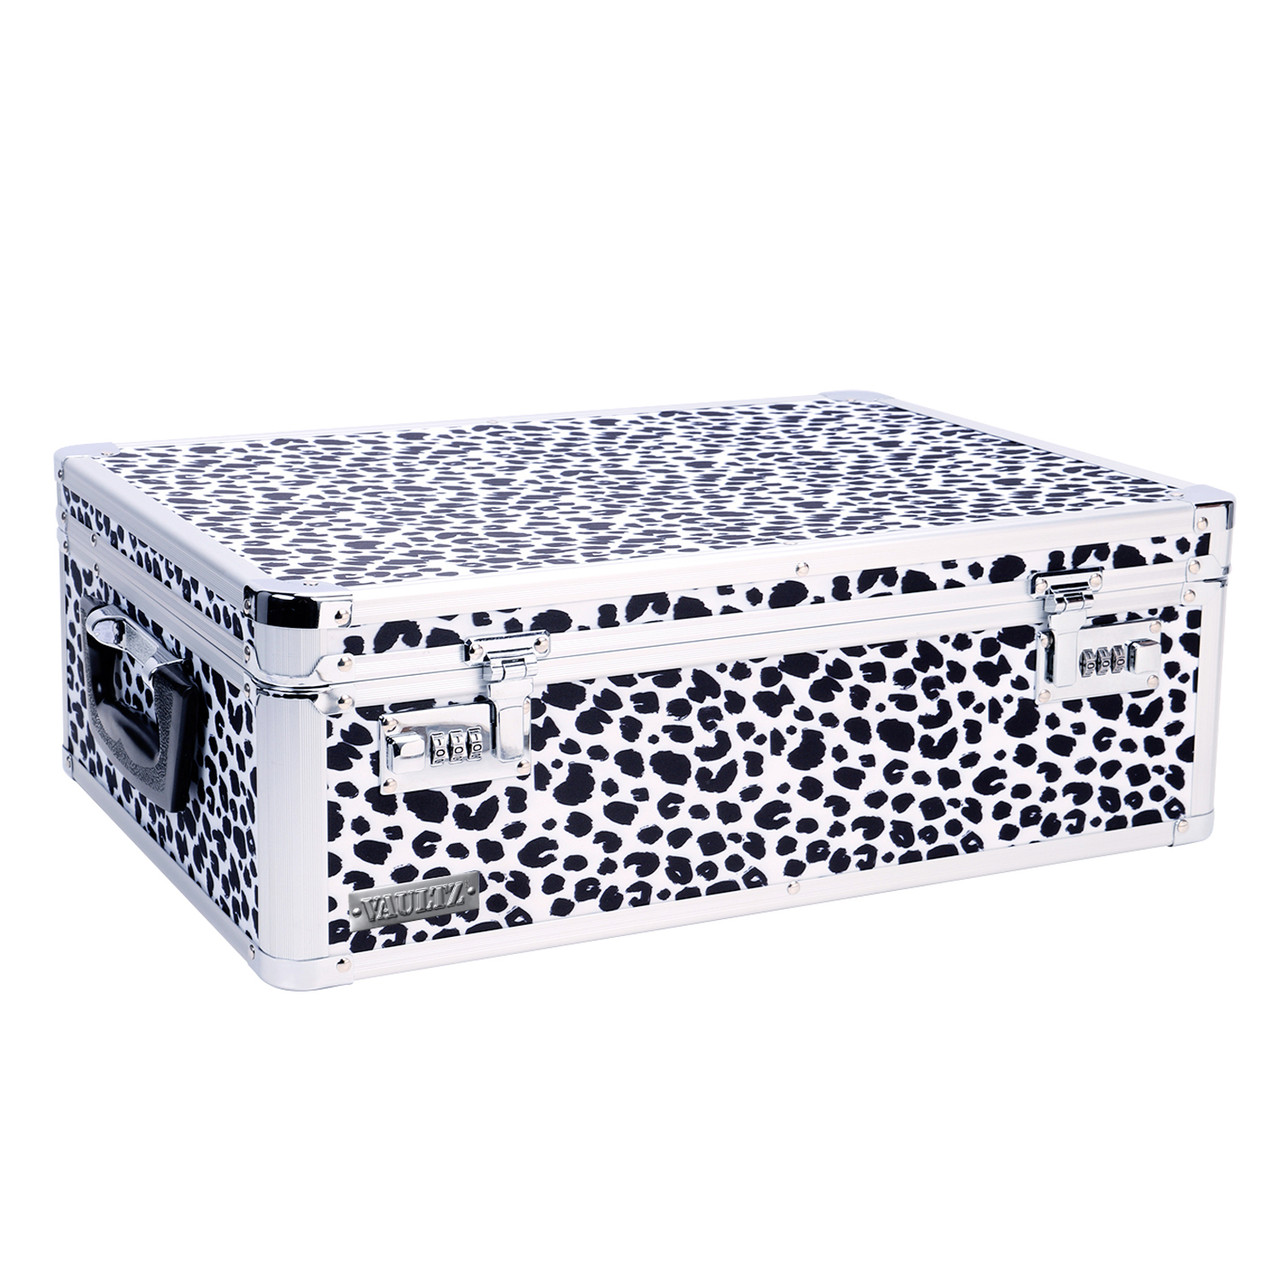 Vaultz Divided Storage Box, White - VZ03891